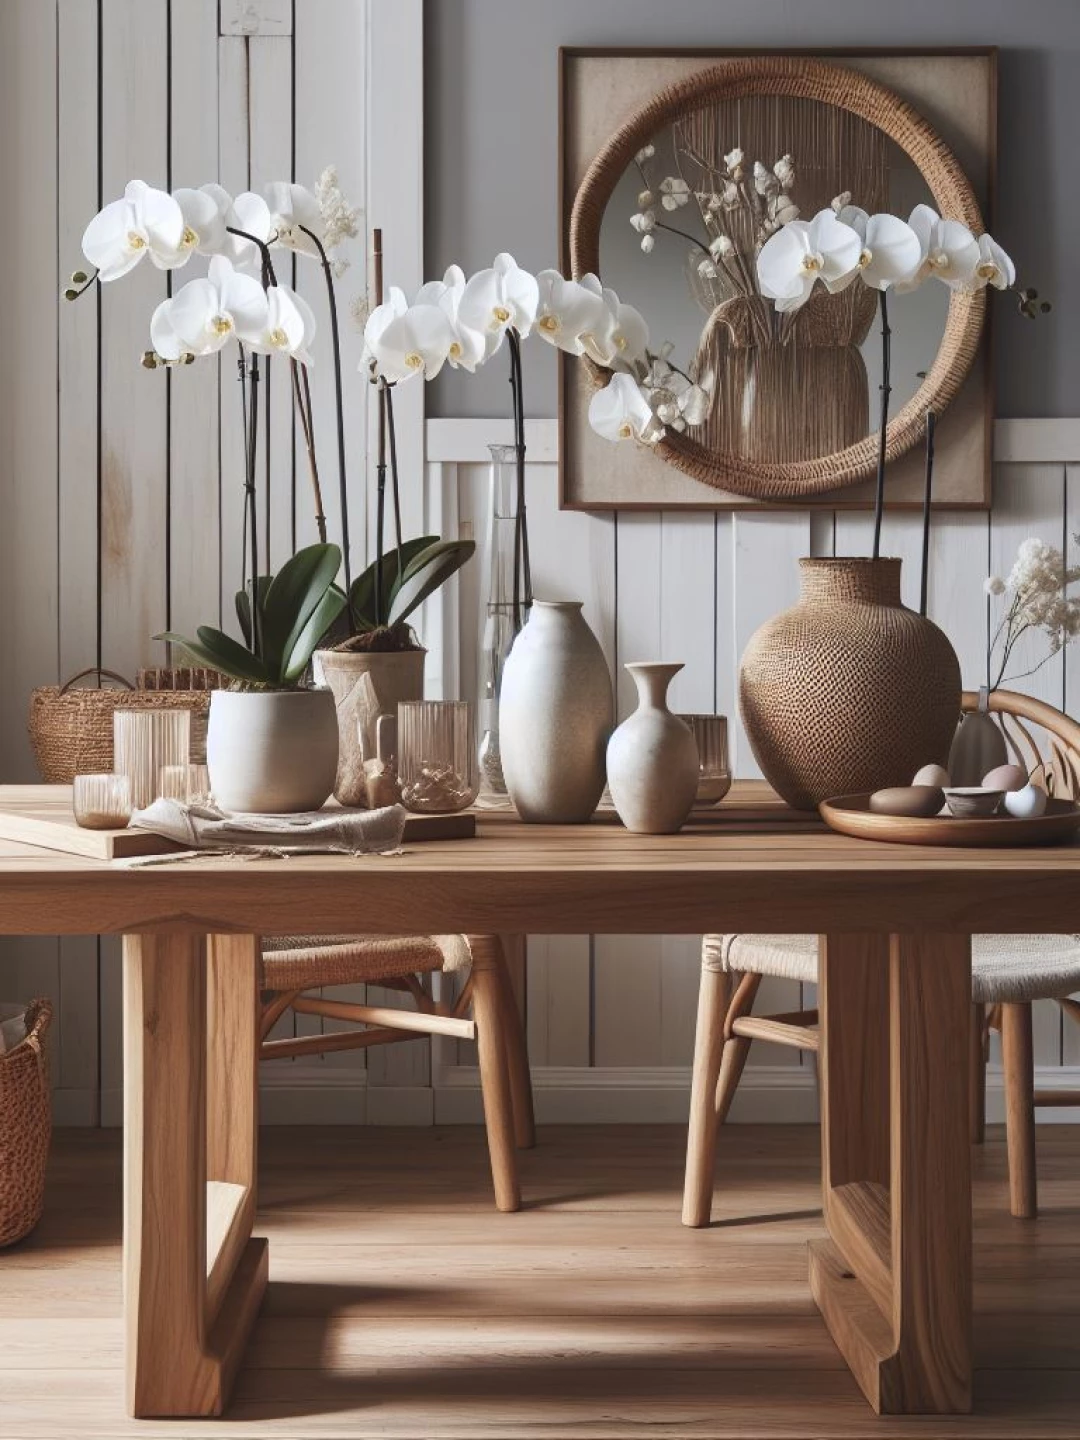 Descubra a elegância simples das mesas de madeira rústica em sua casa